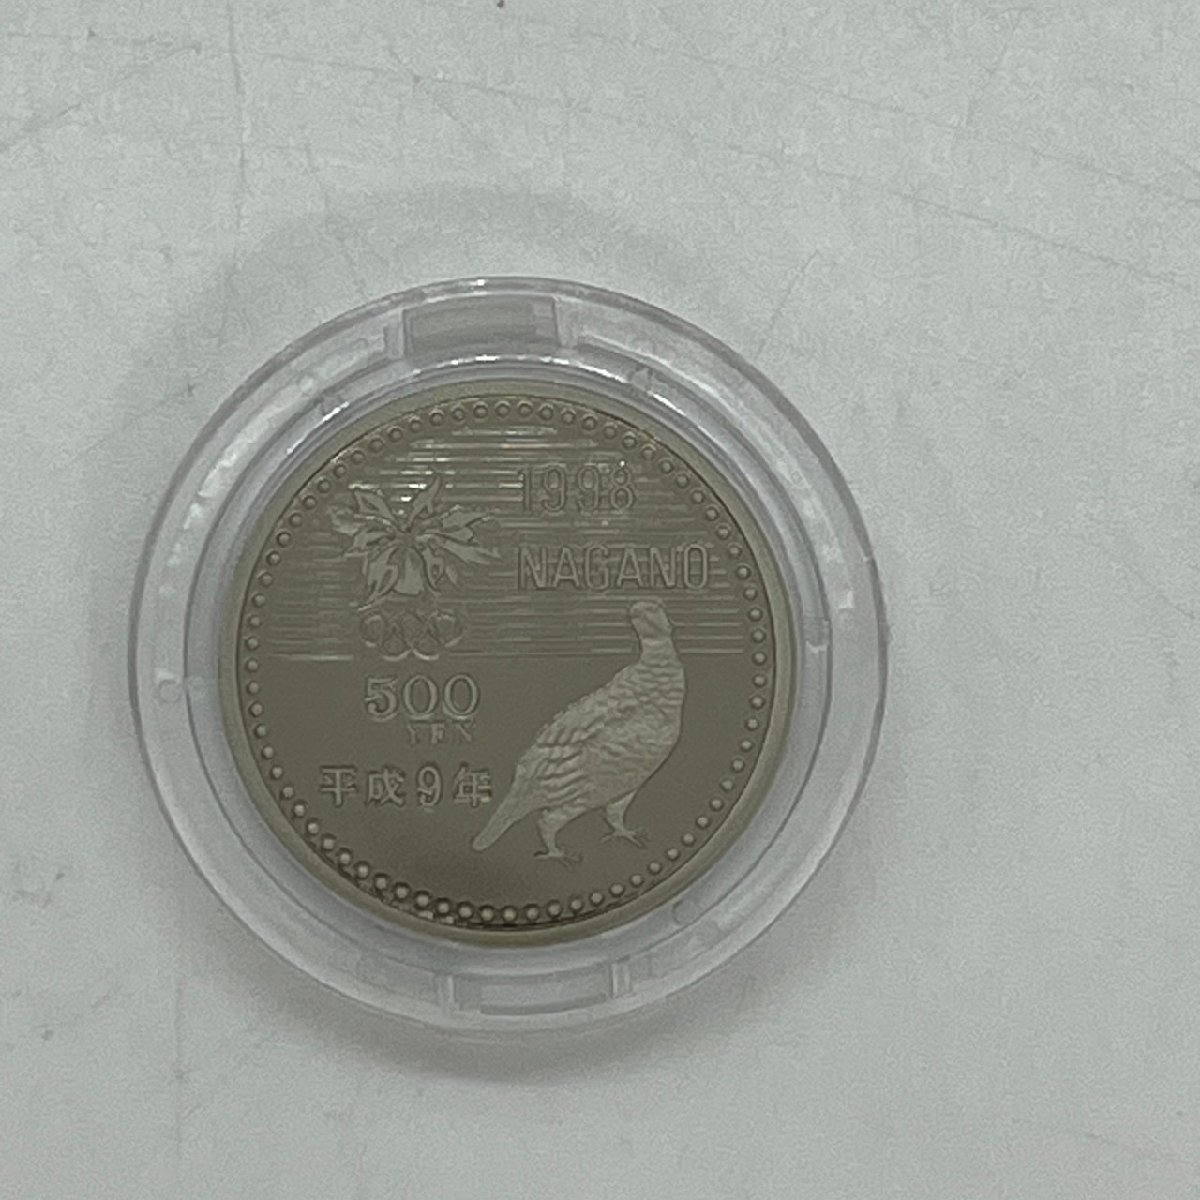 保管品 記念硬貨 長野オリンピック 冬季競技大会 記念貨幣セット 1998